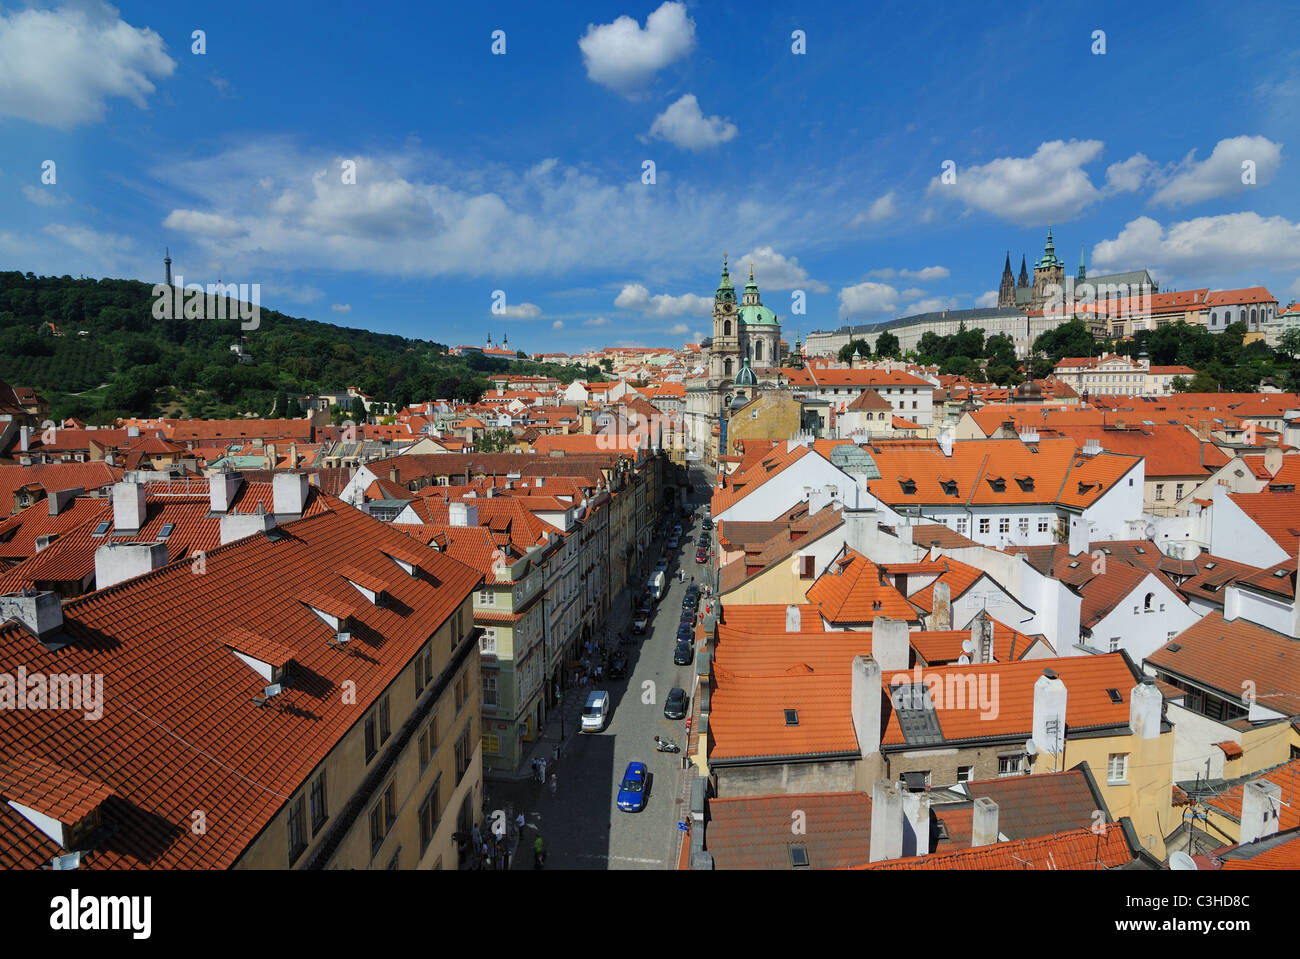 Aerial skyline view of Mala Strana in Prague, Czech Republic. Stock Photo